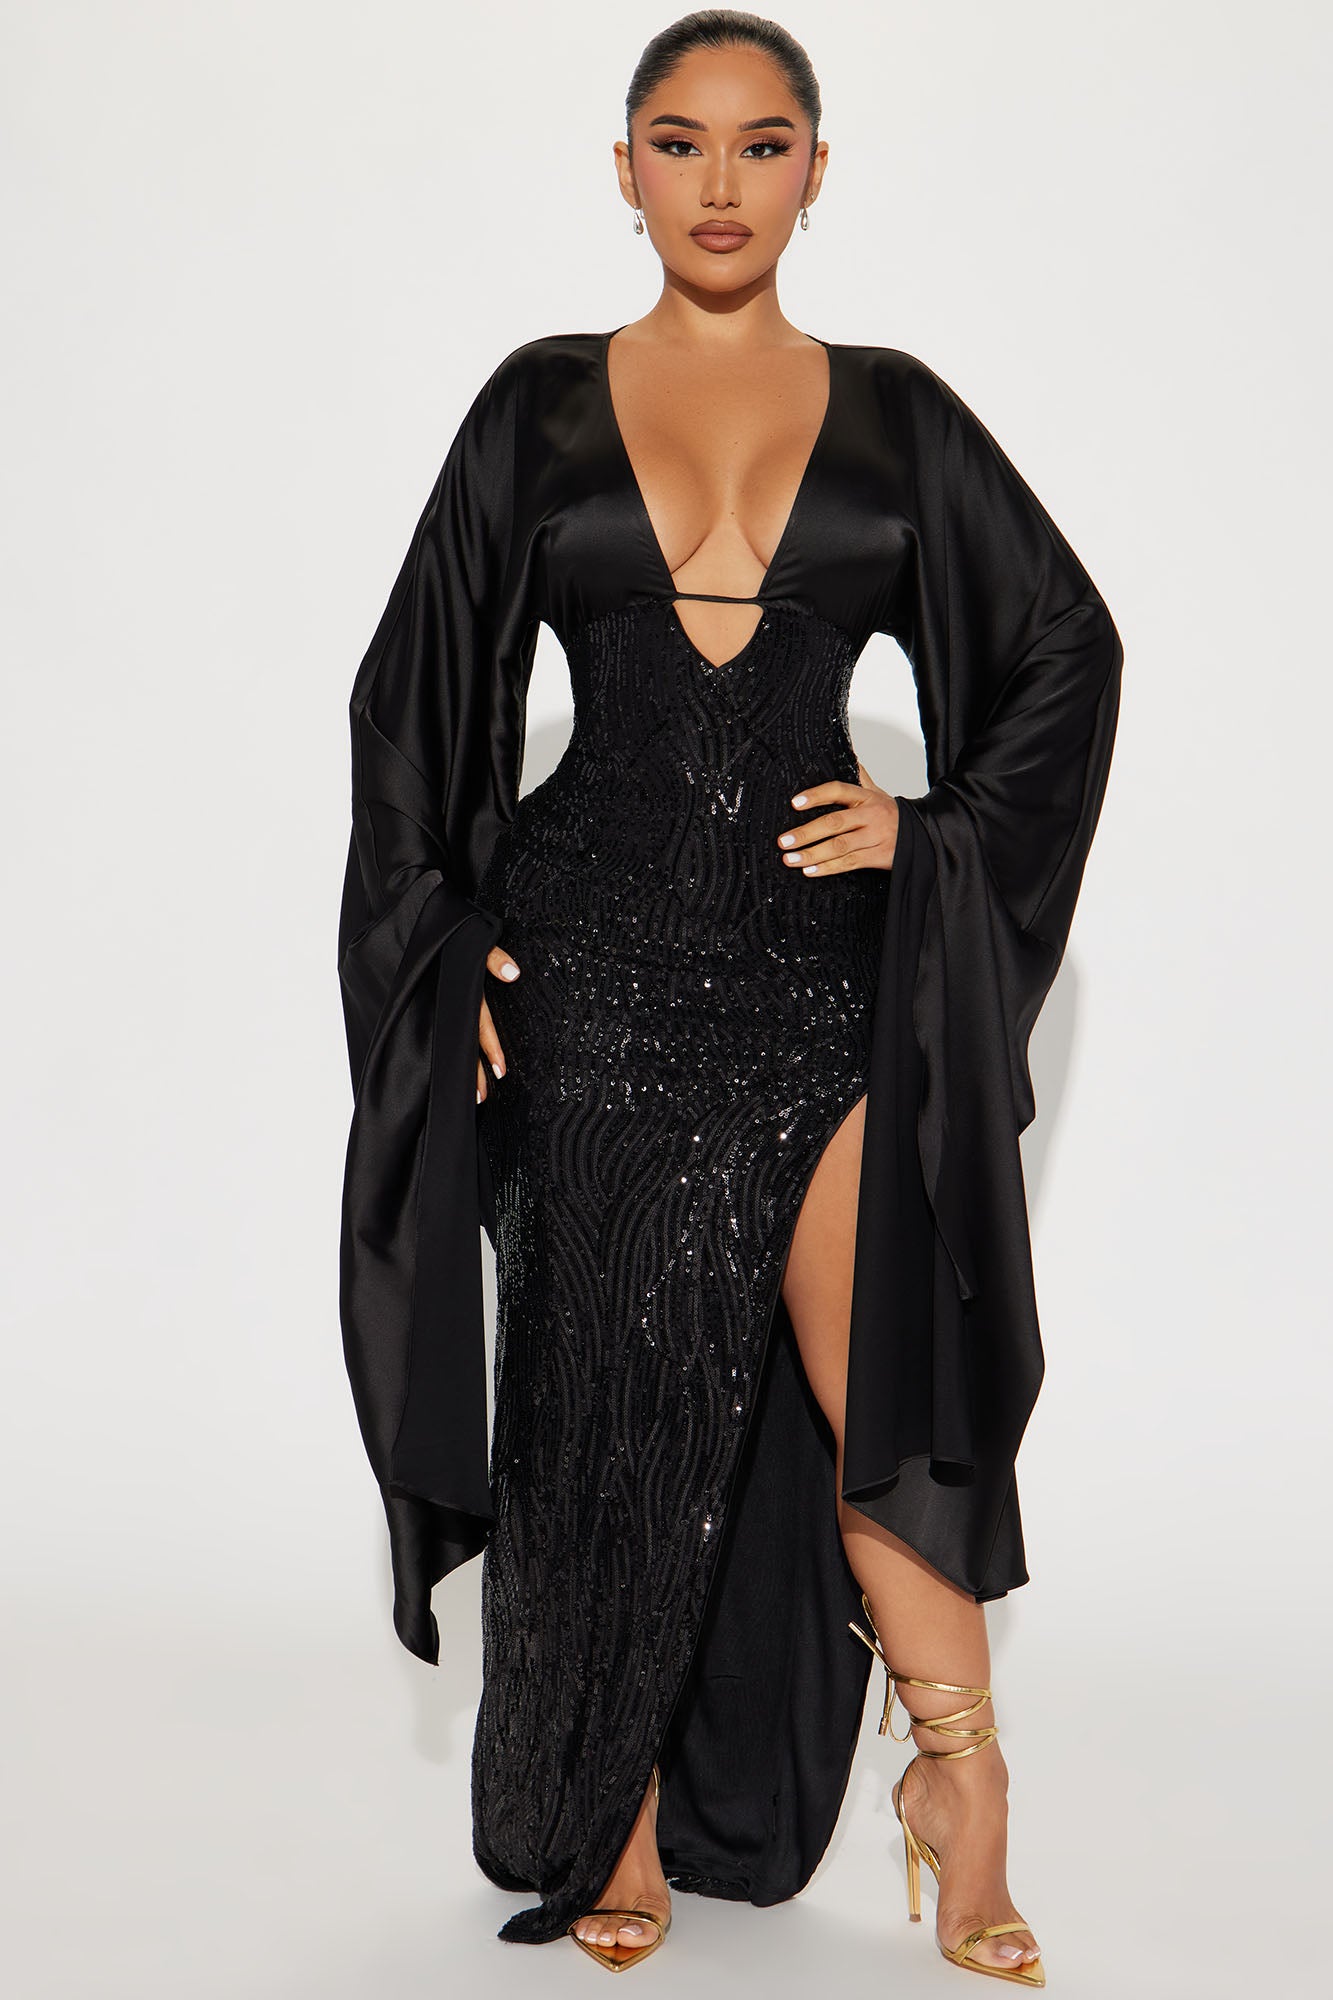 | Fashion - Fashion Gemma Dresses Gown Black Nova, Sequin Nova |